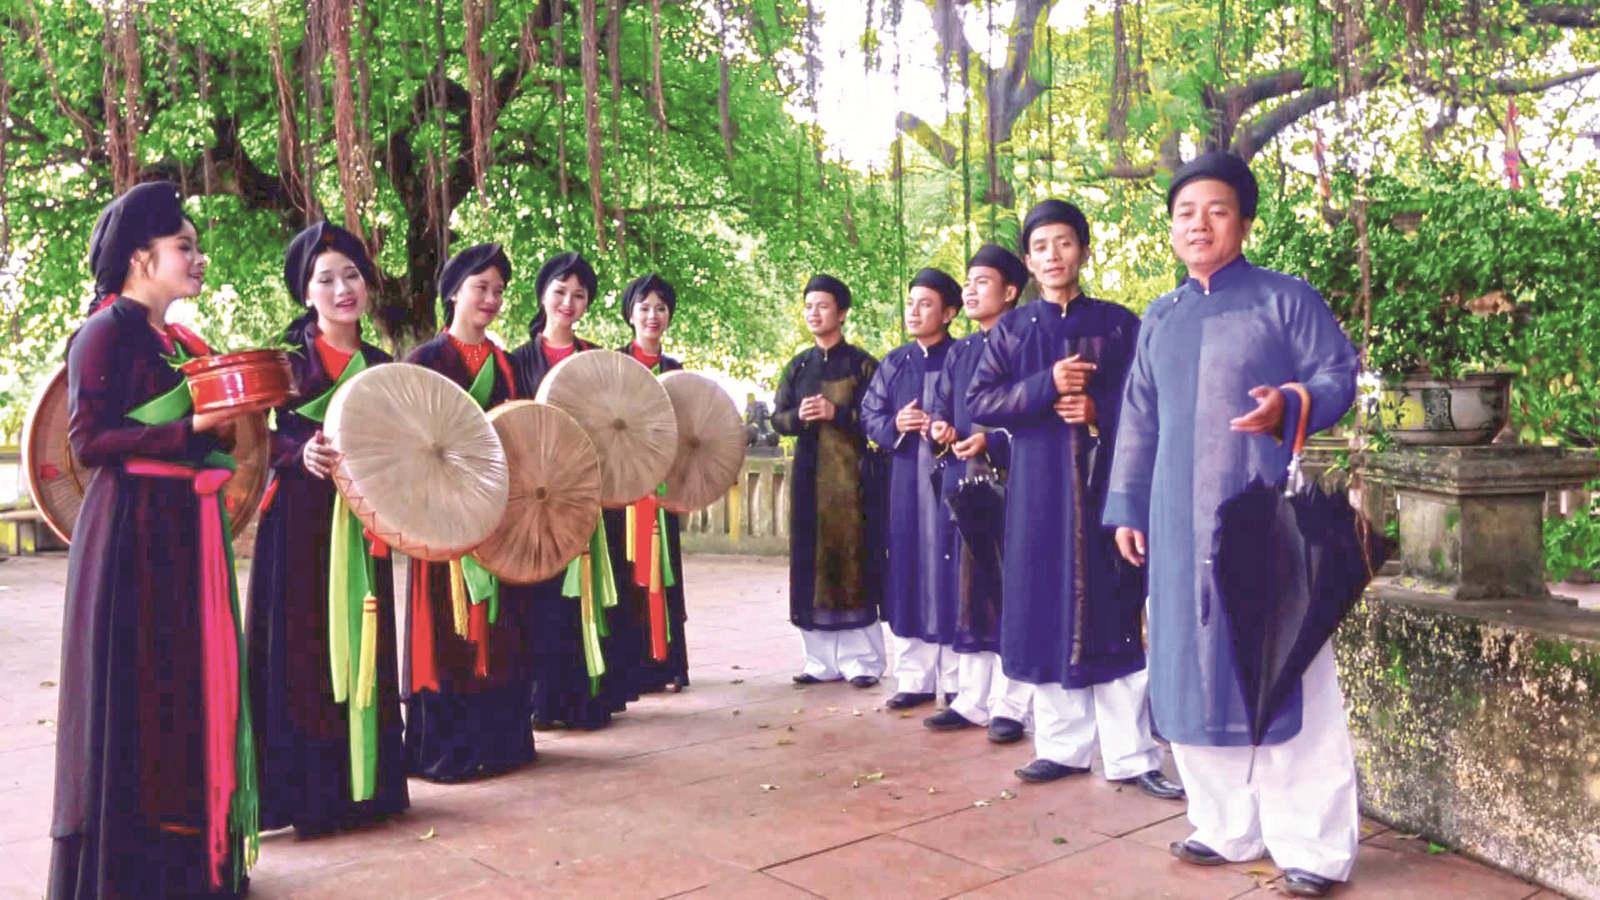 Khám phá Di sản Quan họ Bắc Ninh, một nét văn hóa đặc trưng của vùng đất phía Bắc. Di sản này hiện là một trong những địa danh du lịch thu hút nhiều du khách trong và ngoài nước, với những giá trị văn hóa đặc sắc được chú trọng bảo vệ và phát triển.